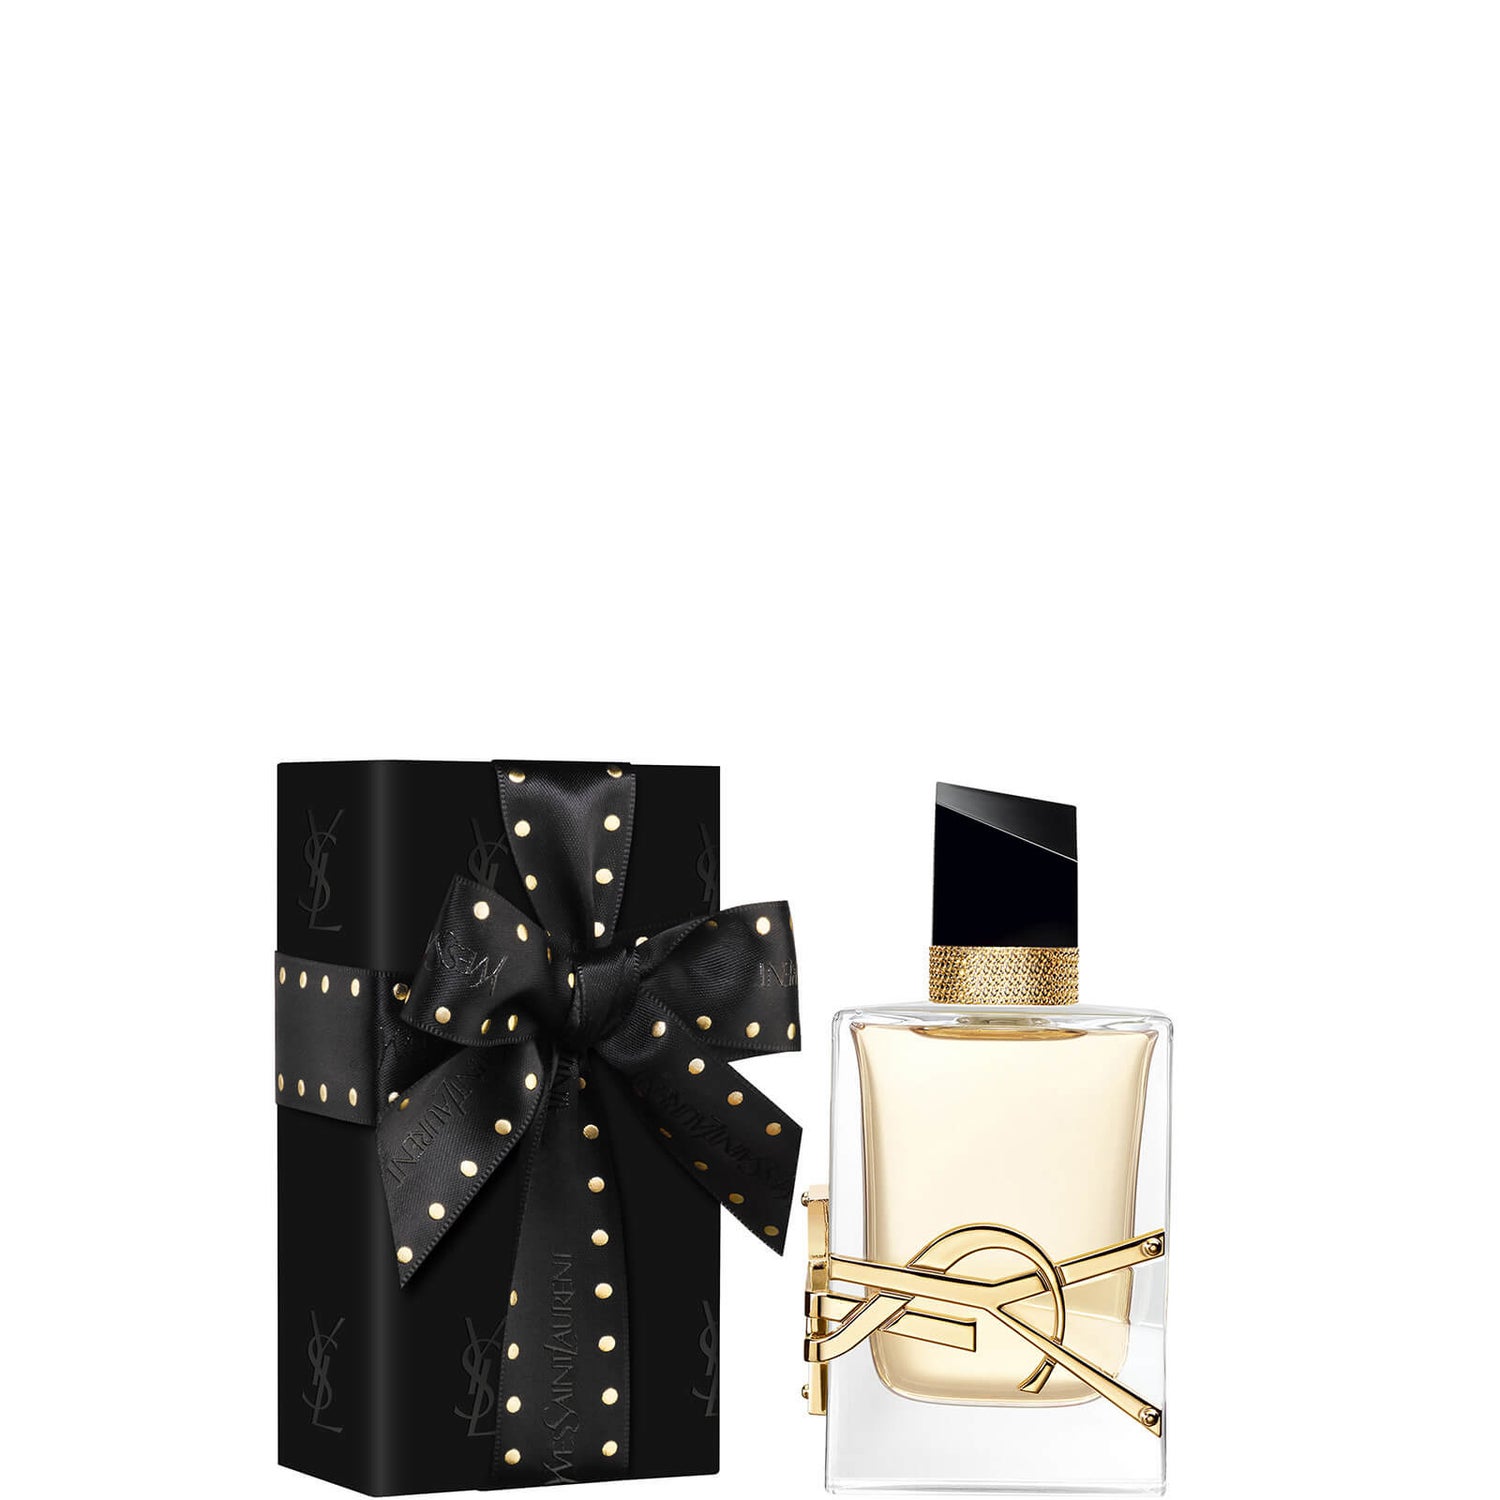 Yves Saint Laurent Pre-wrapped Libre Eau de Parfum - 50ml